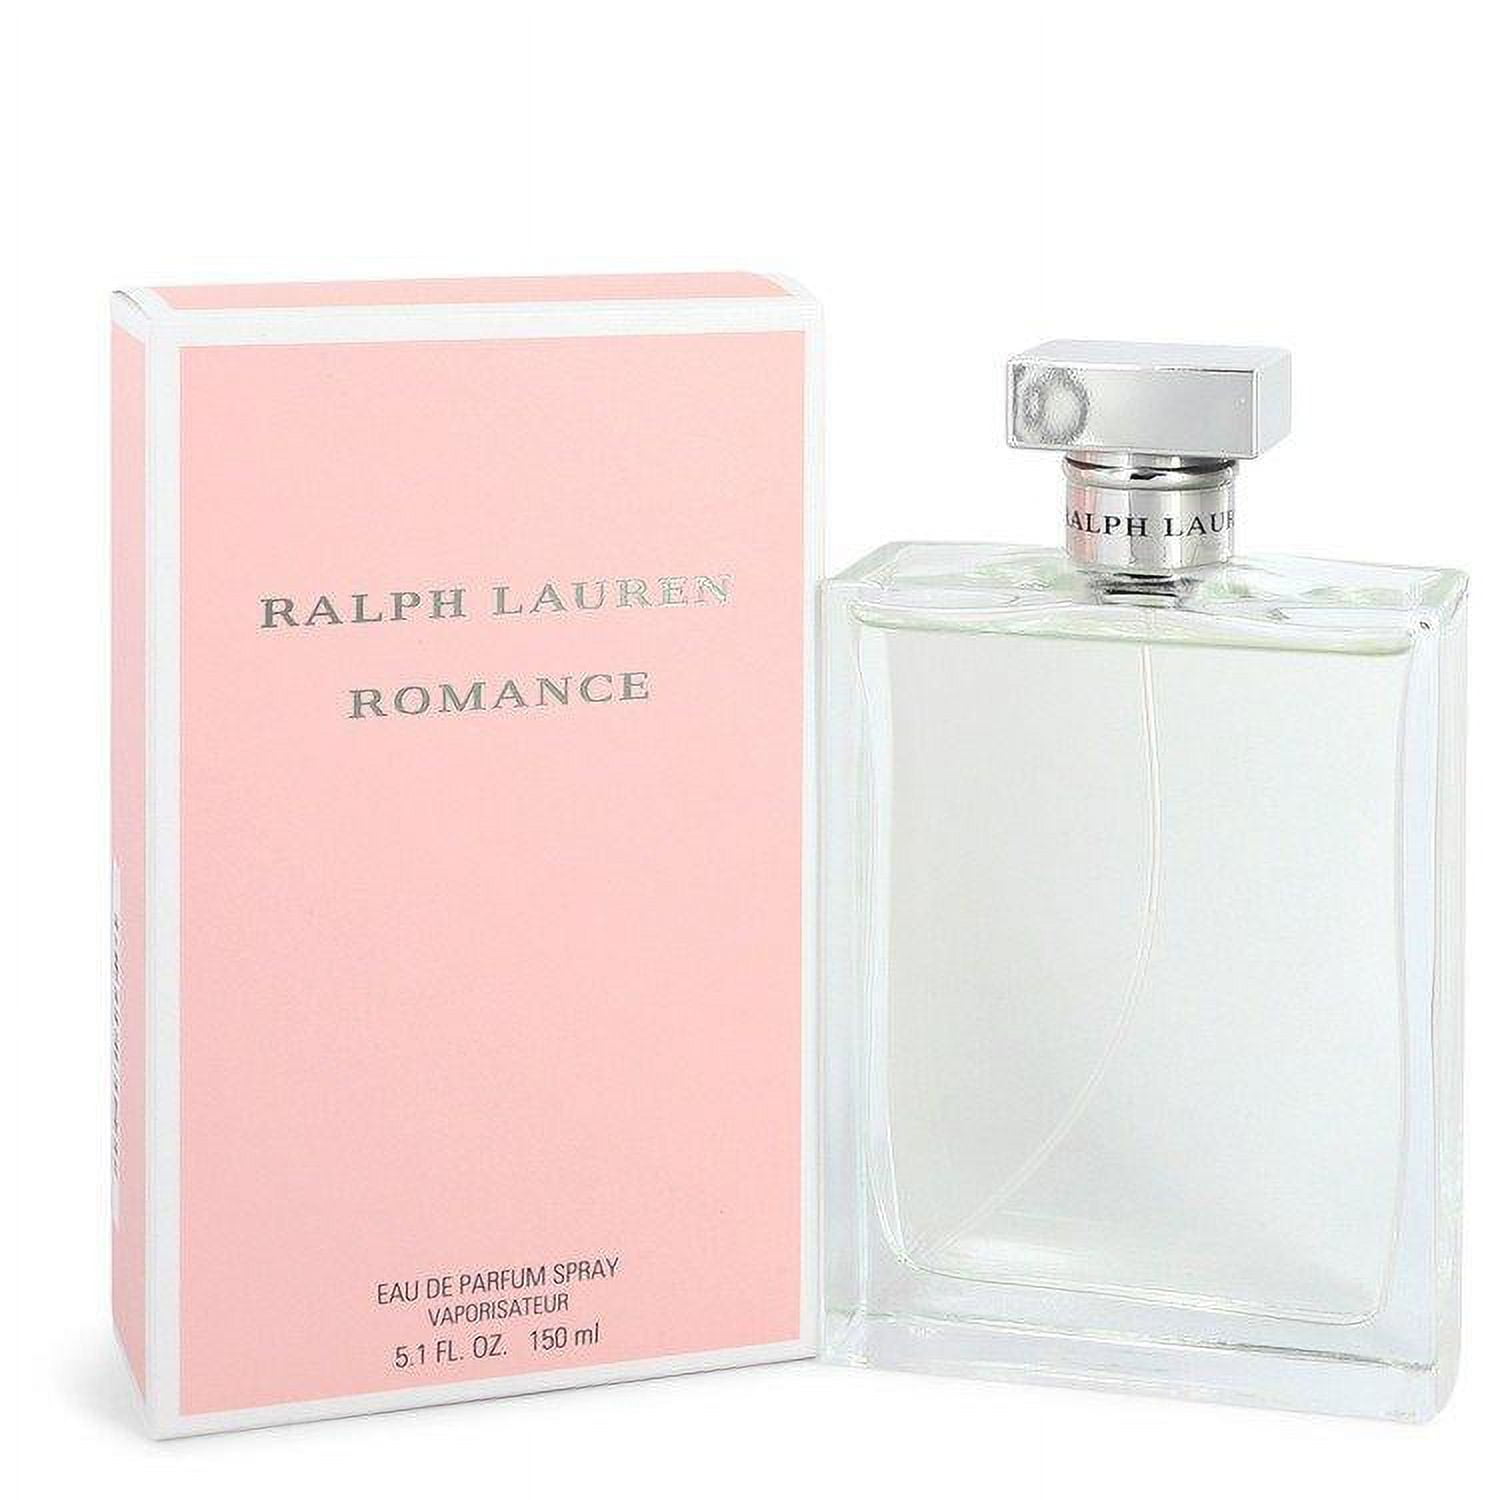 ROMANCE by Ralph Lauren Eau De Parfum Spray for Women